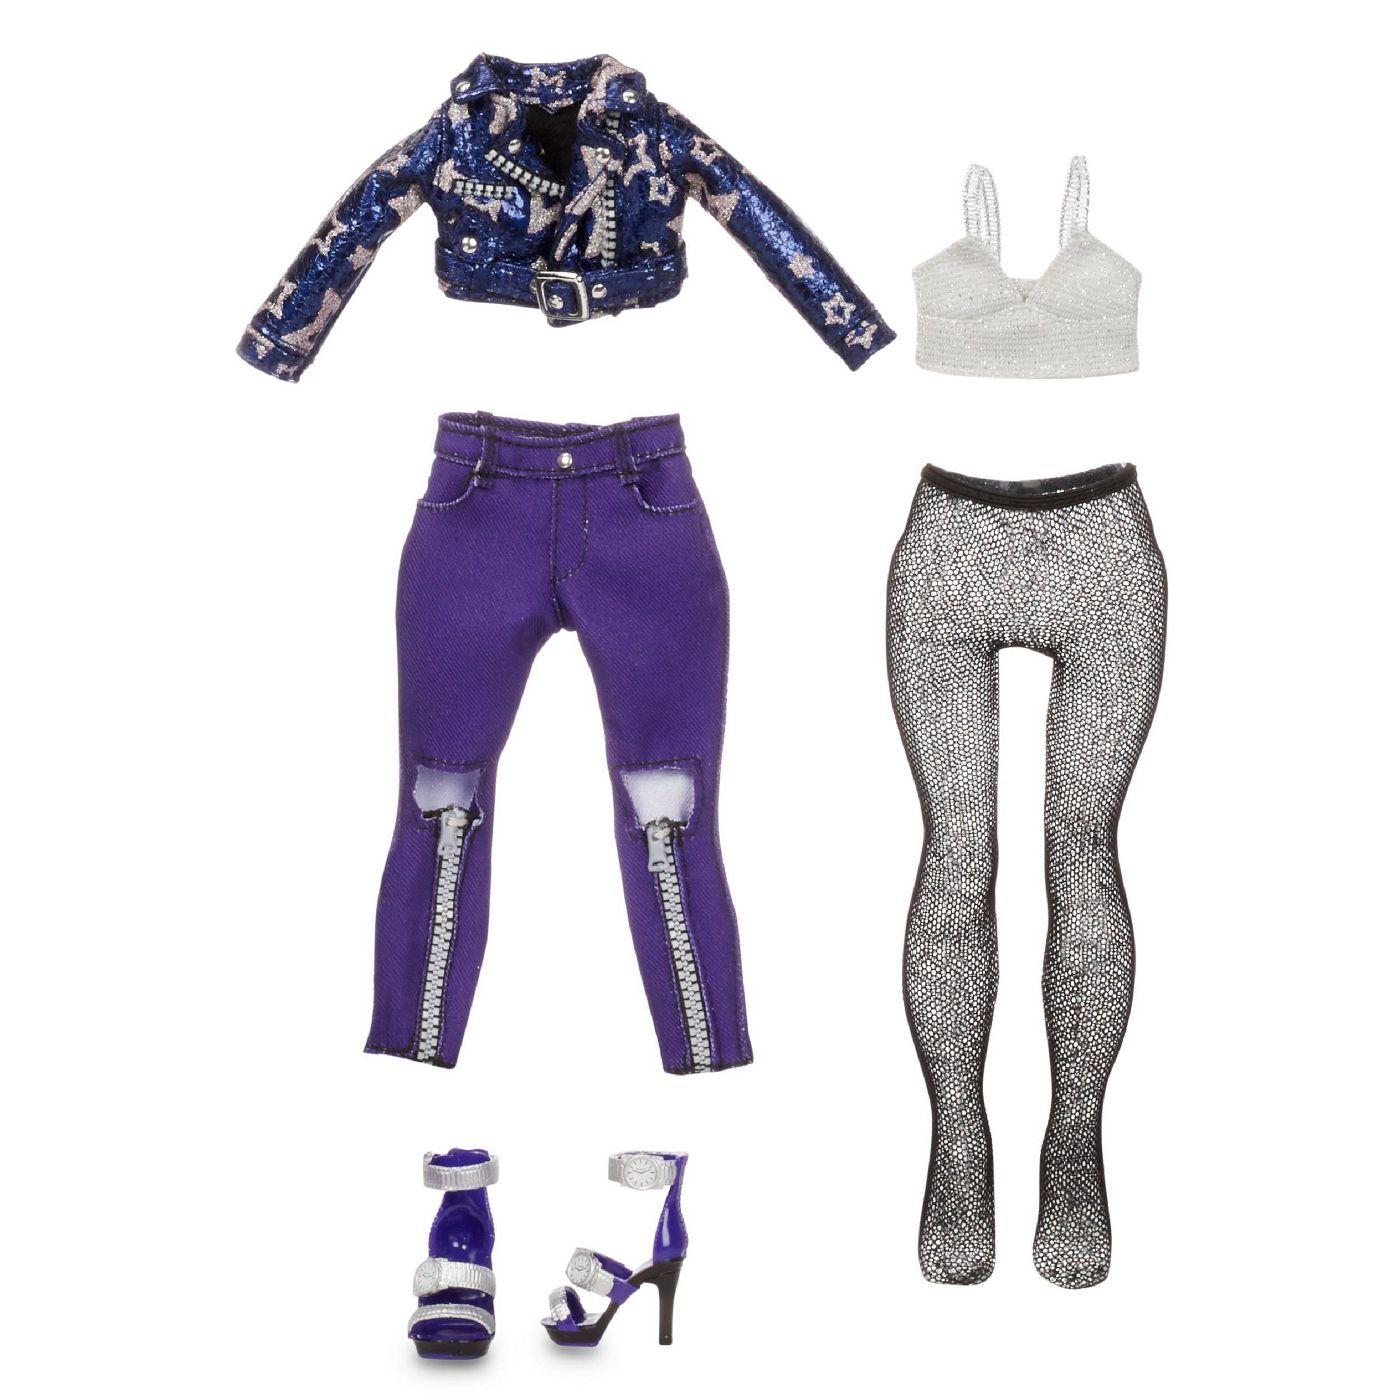 Rainbow high krystal bailey – poupée-mannequin indigo (bleu violacé) avec 2  tenues complètes à agenc - rainbow high krystal bailey – indigo (dark blue  purple) fashion doll with 2 complete mix 